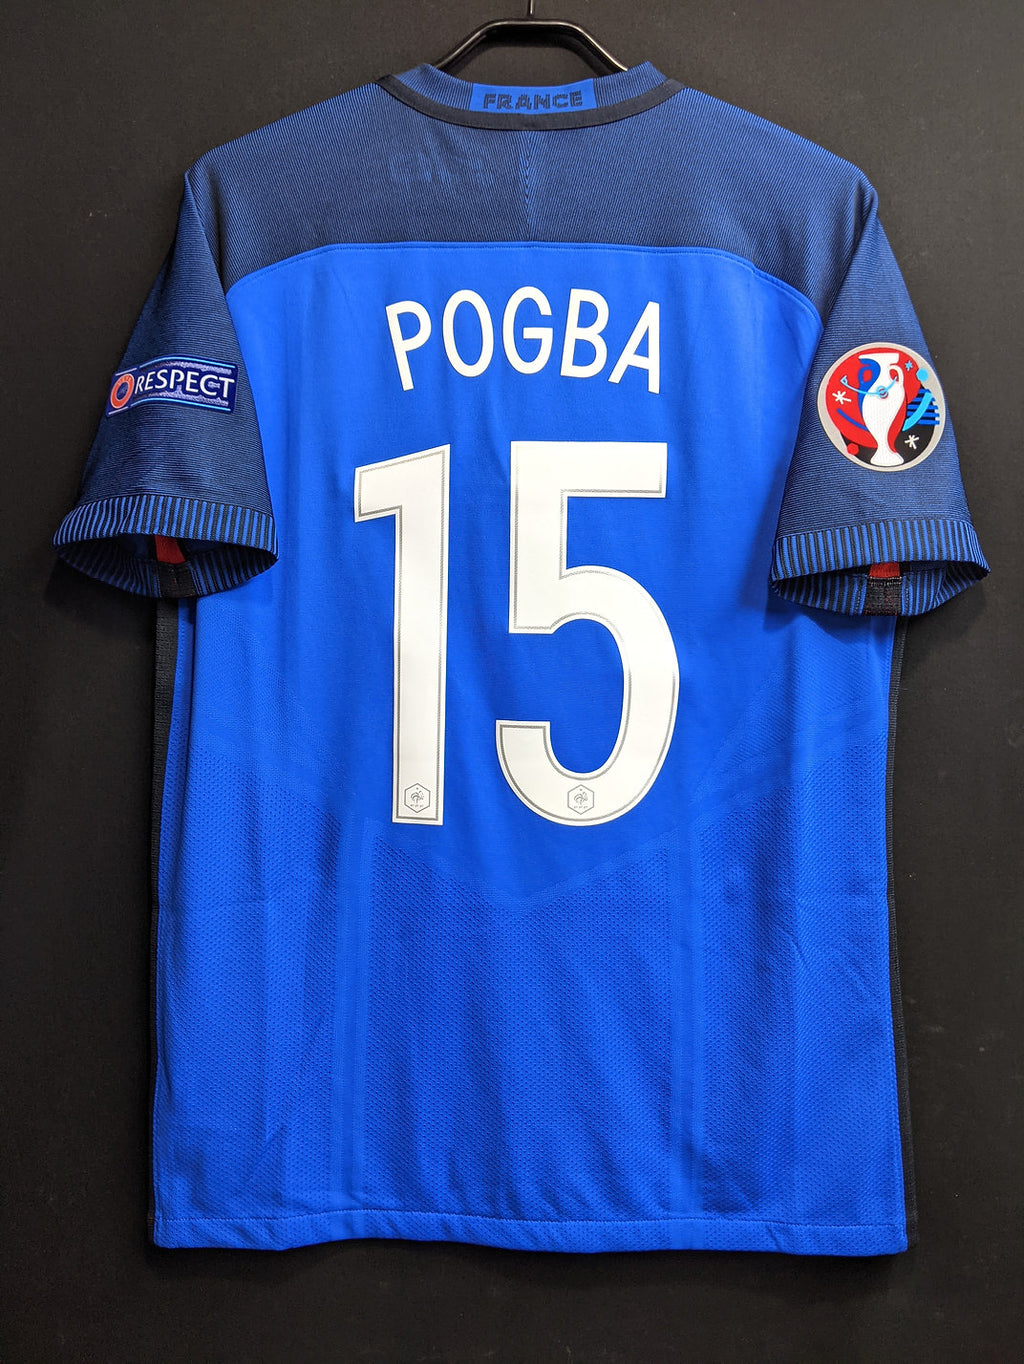 16 フランス代表 H Condition A Size L 15 Pogba オーセンティック Euroパ Vintage Sports Football Store